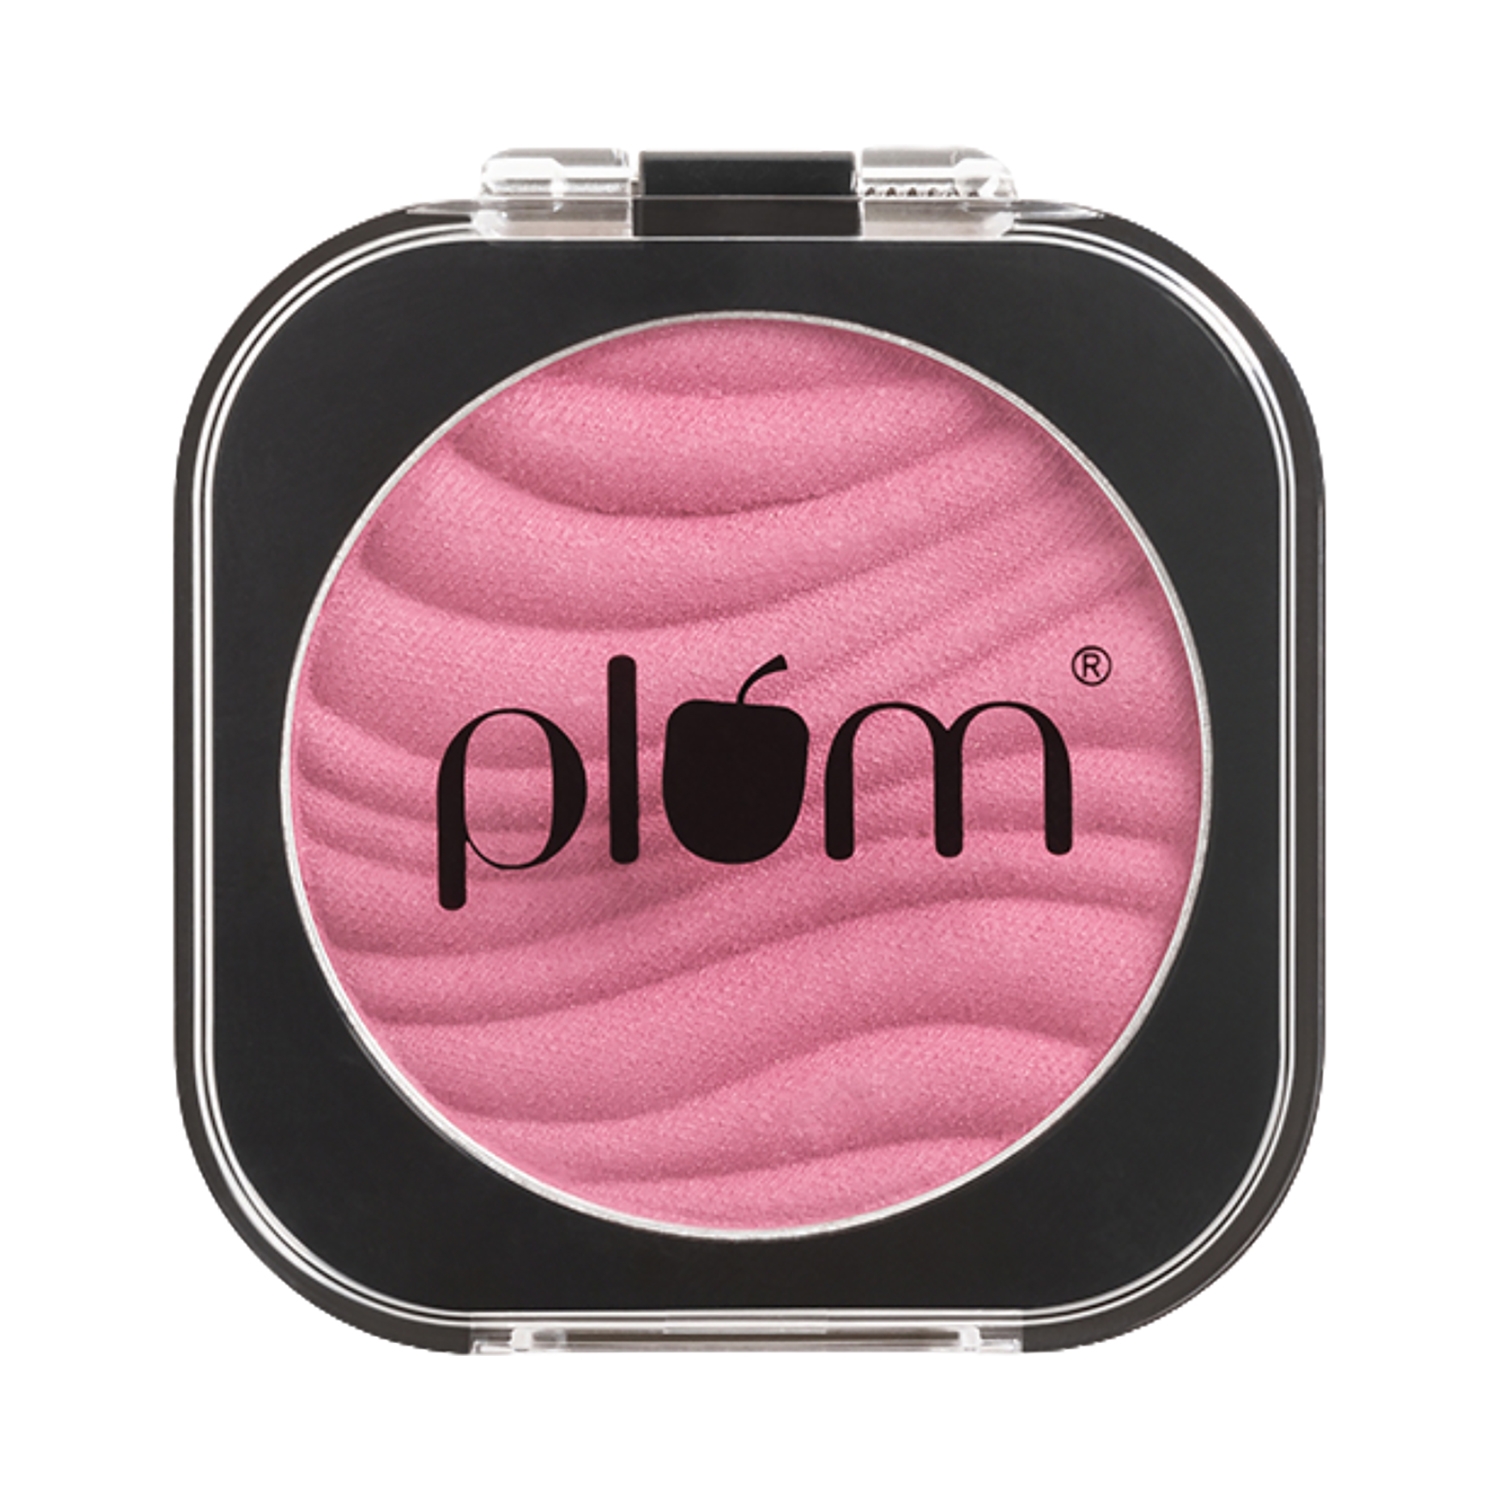 Plum Cheek-A-Boo Matte Blush - 121 Peach Out (4.5g)